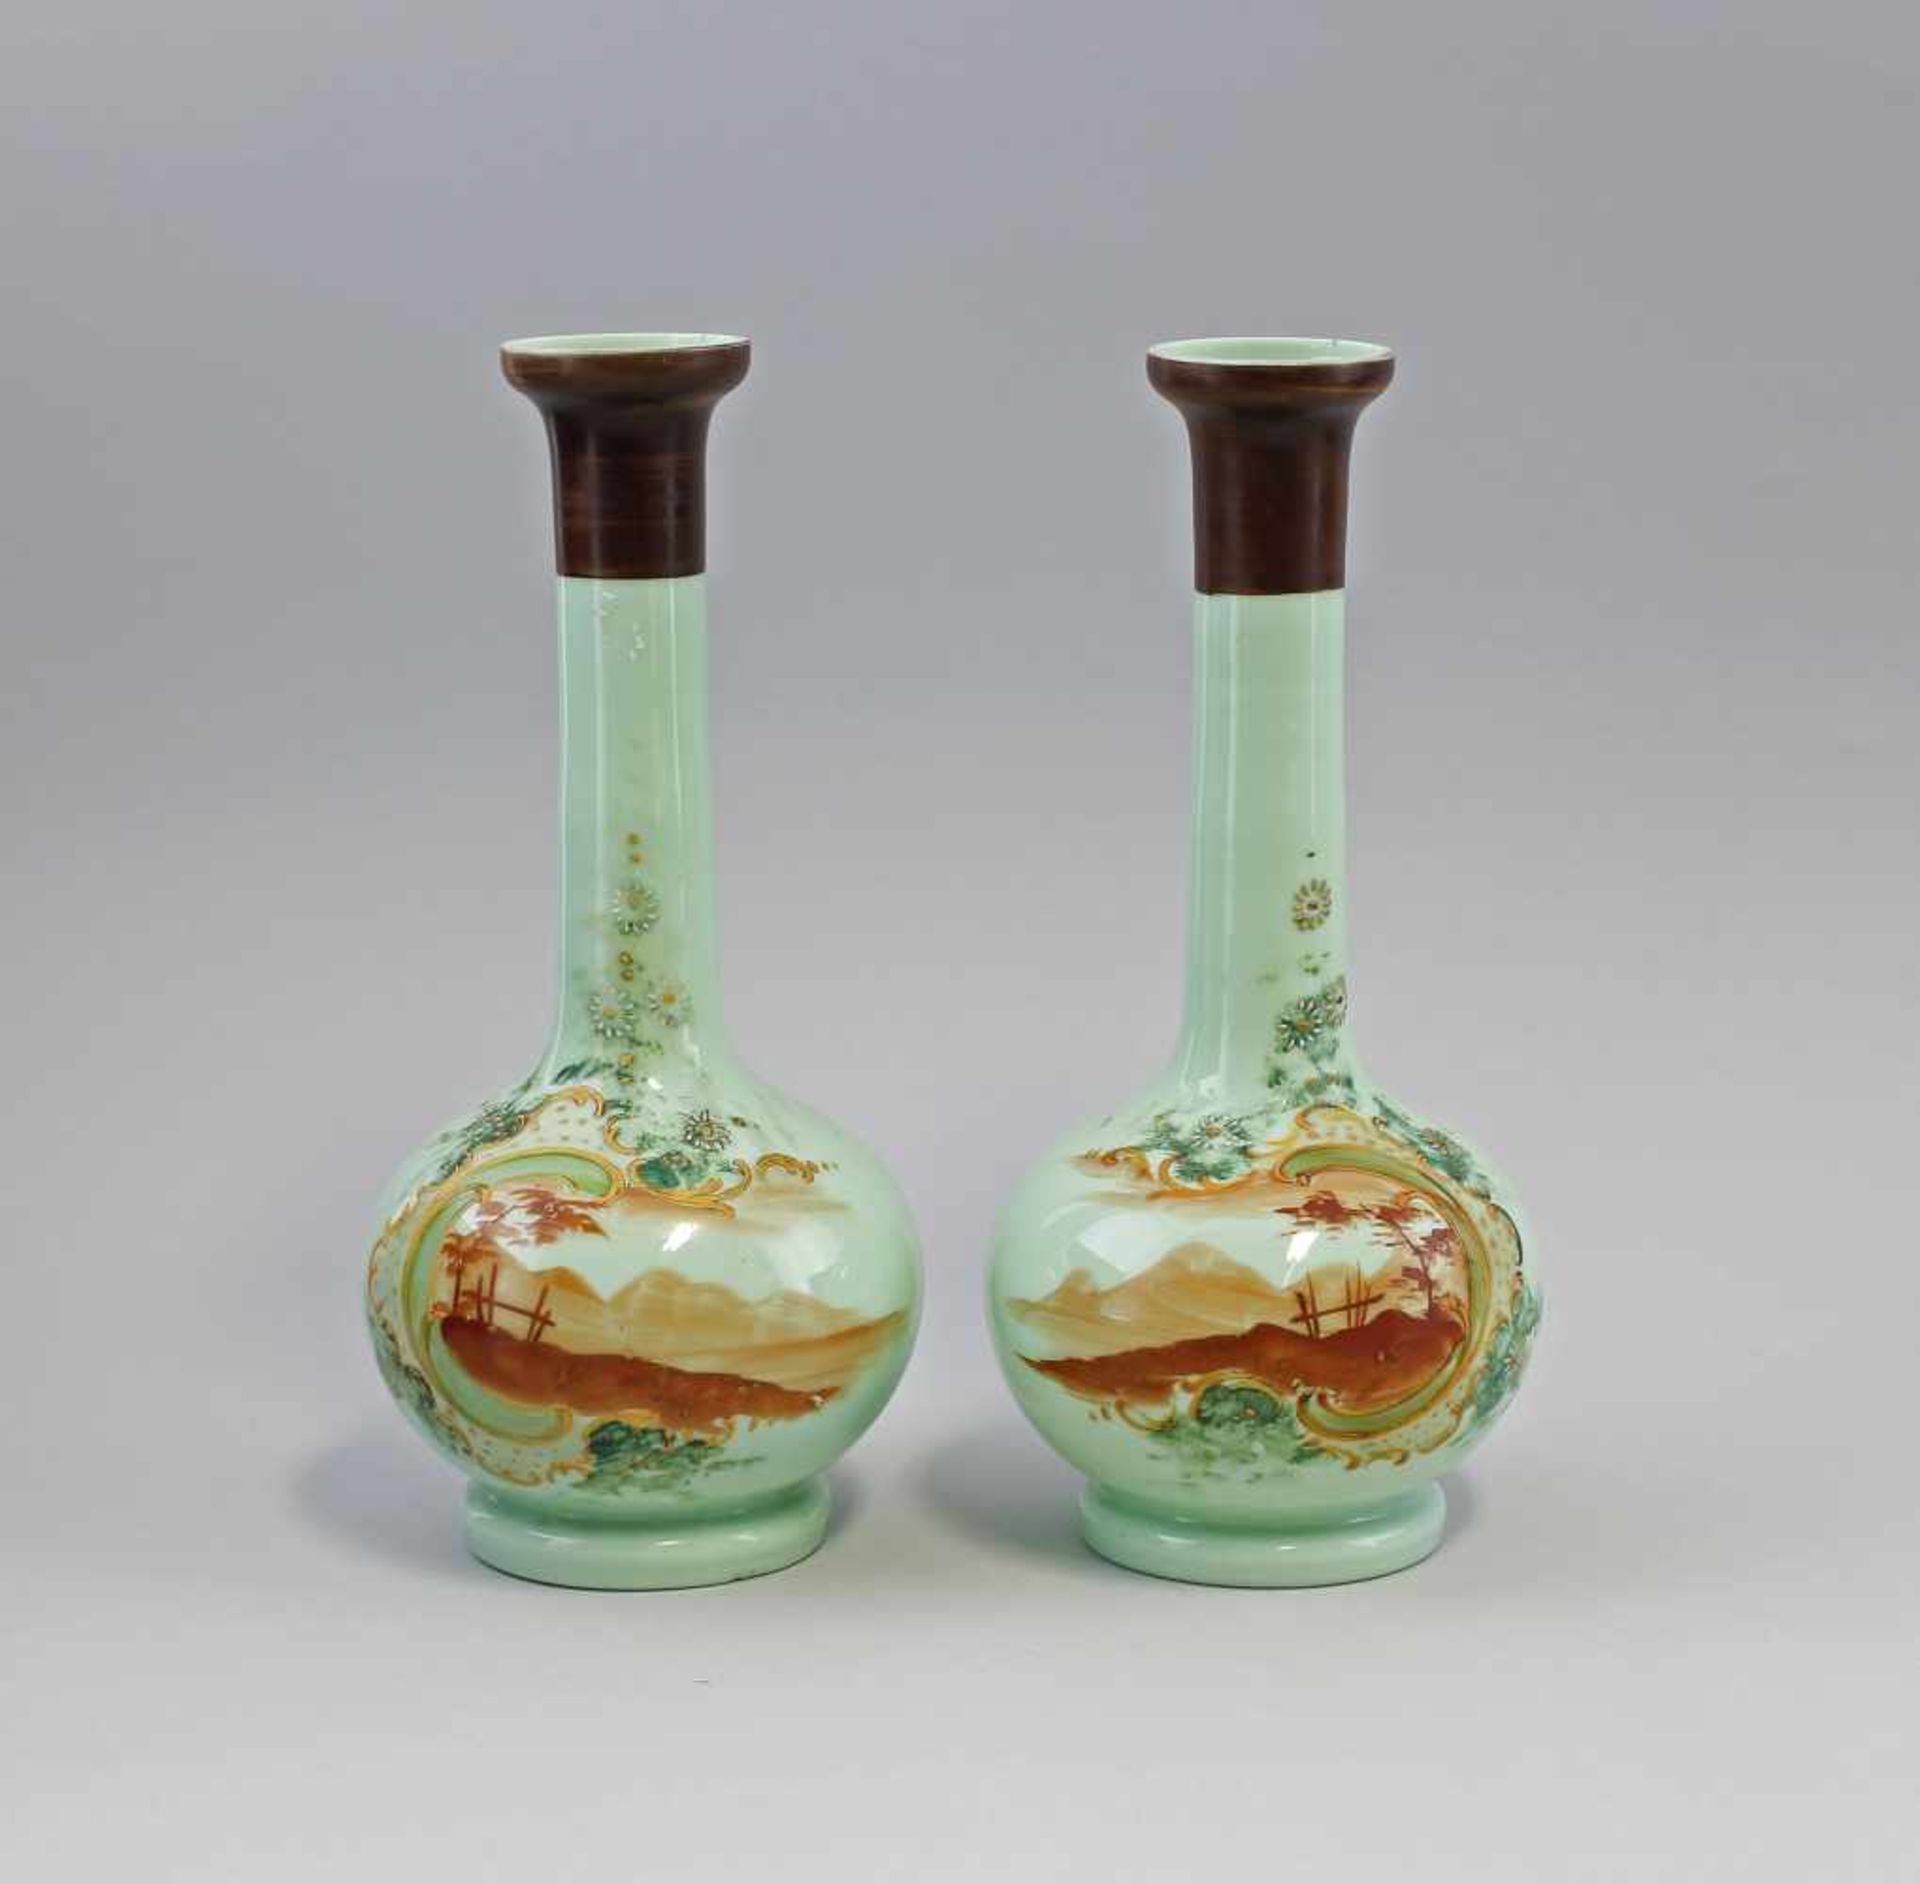 Vasen-Paar Landschaftsmalerei Ende 19. Jh. mintgrünes Milchglas, kugeliger Korpus mit Enghals,